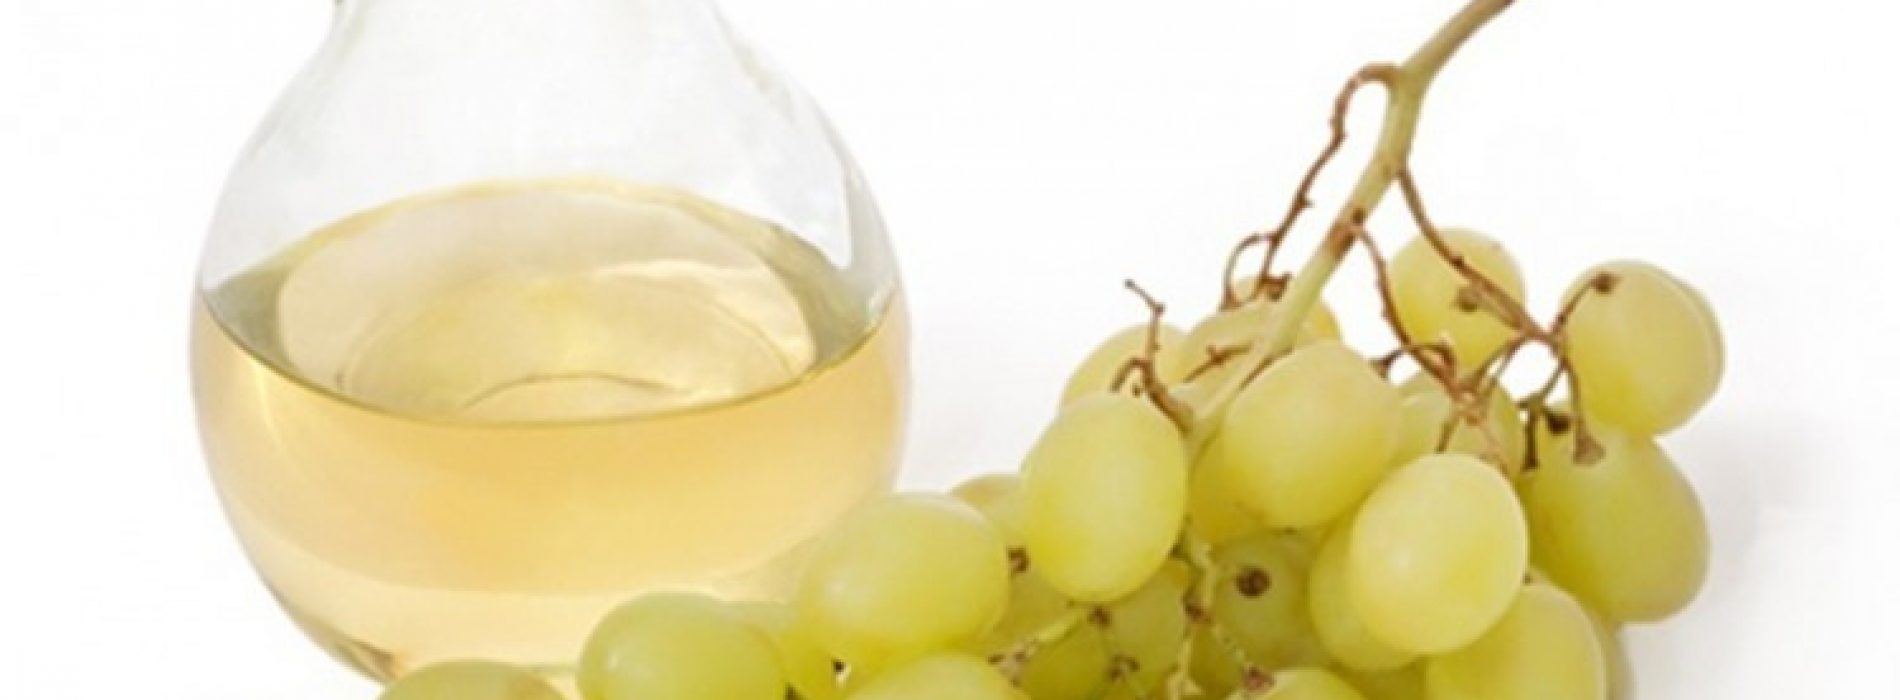 Wat betekent druivenpitolie voor onze gezondheid?